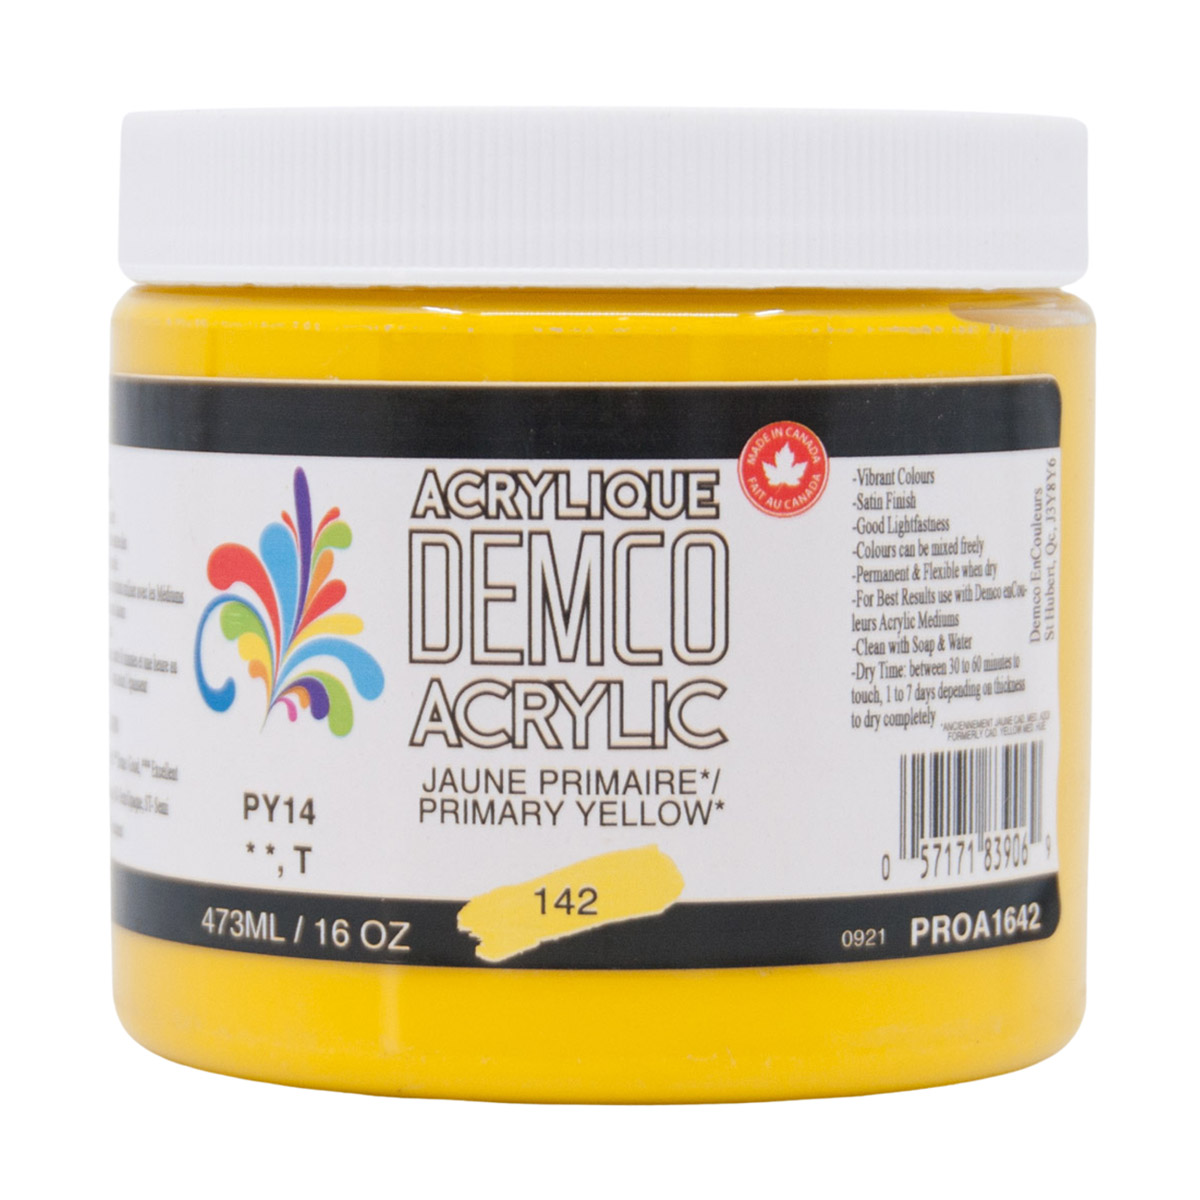 Demco Acrylic Primary Yellow 473ml/16oz